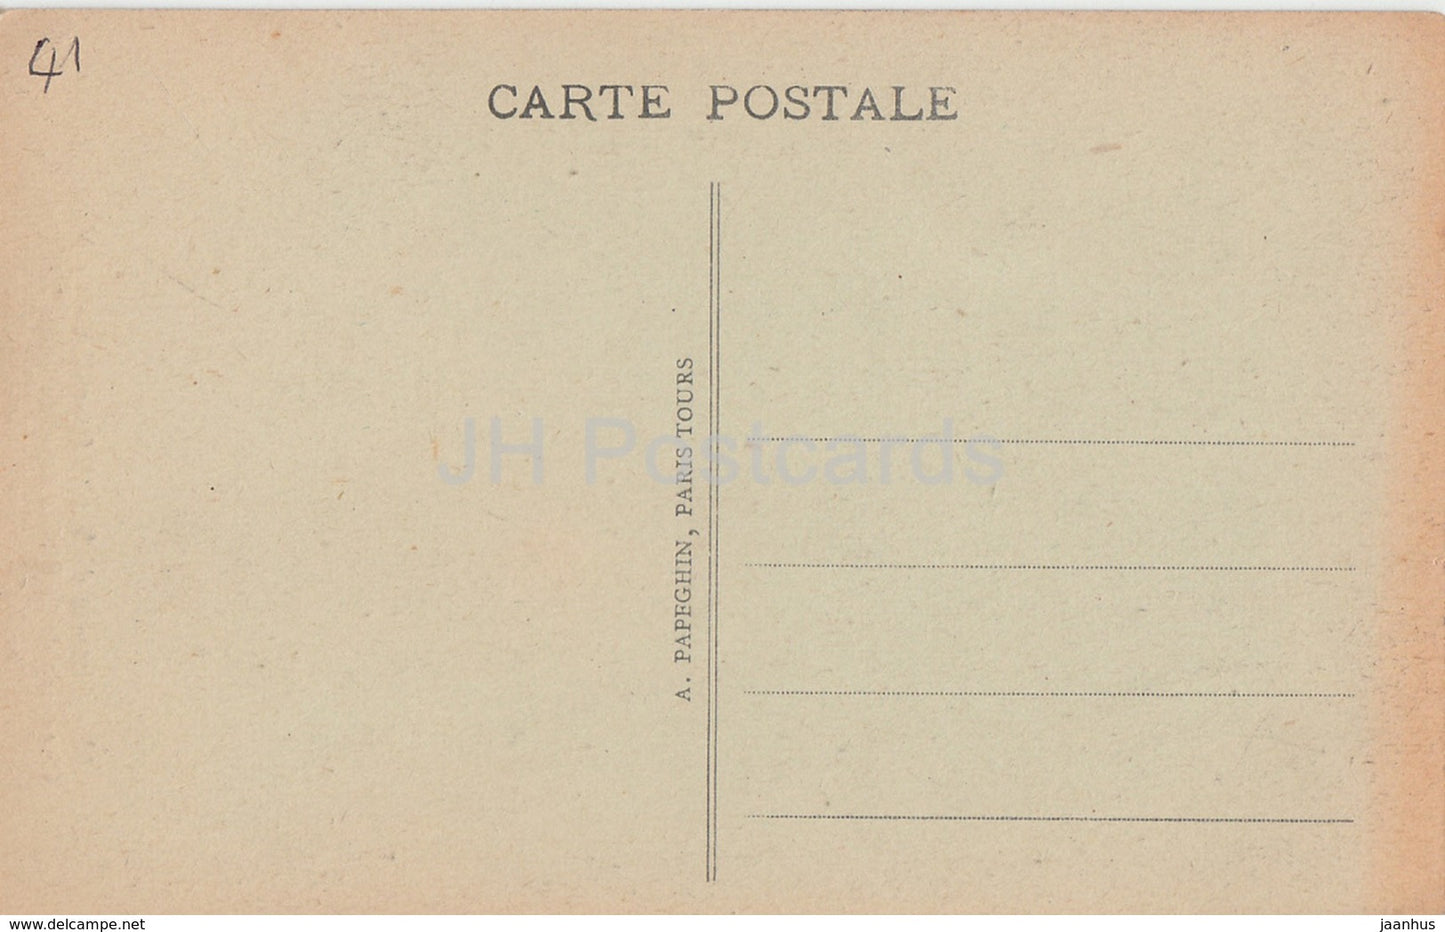 Chateau de Blois - Le Musee - Cheminee de la Bibliotheque de Louis XII - 58 - alte Postkarte - Frankreich - unbenutzt